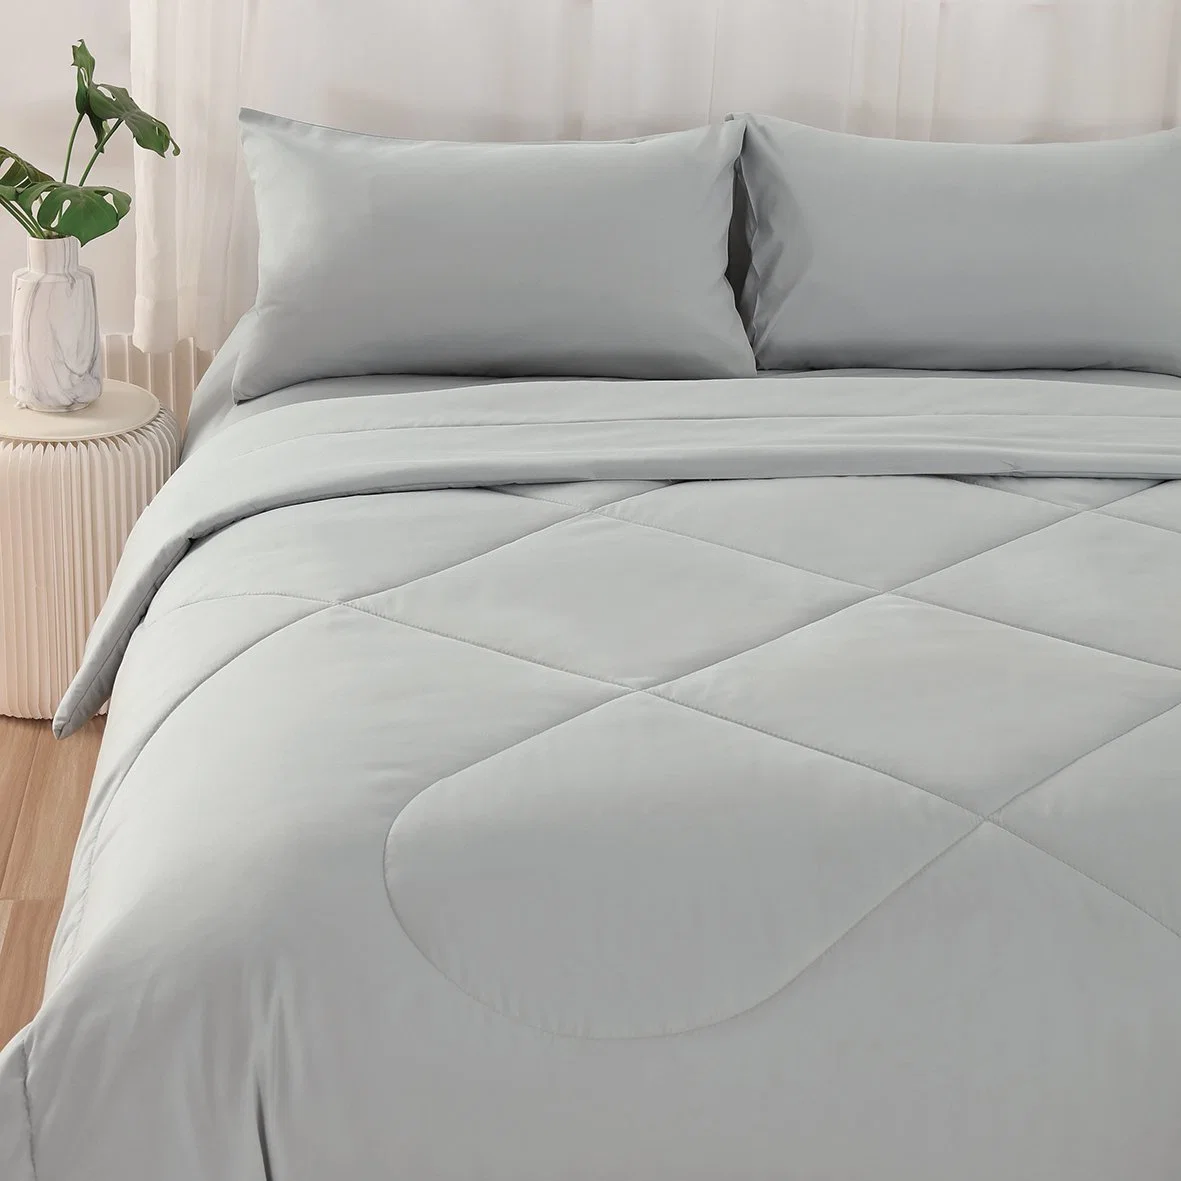 King Bed Sheets Set - 5 Piece Bedding - Brushed Microfiber